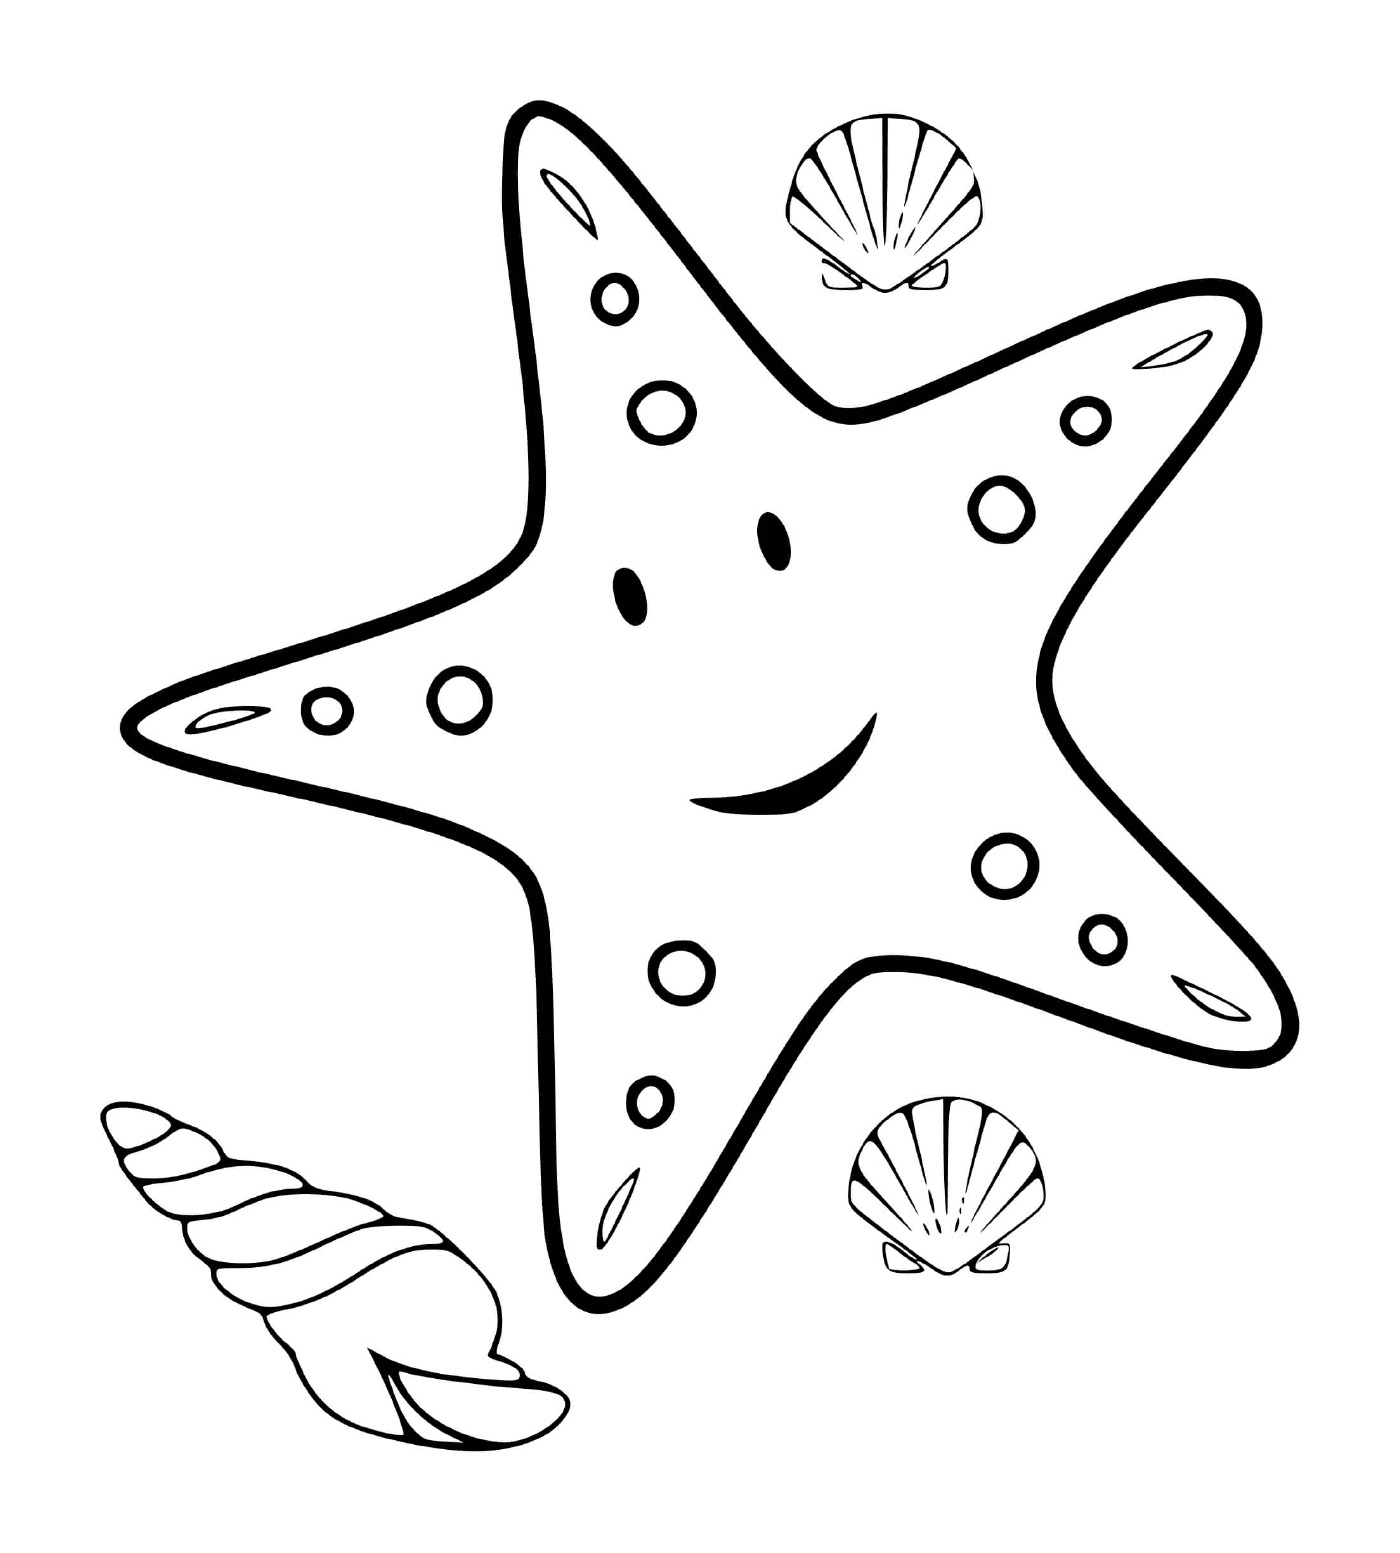  una estrella de mar y mariscos 